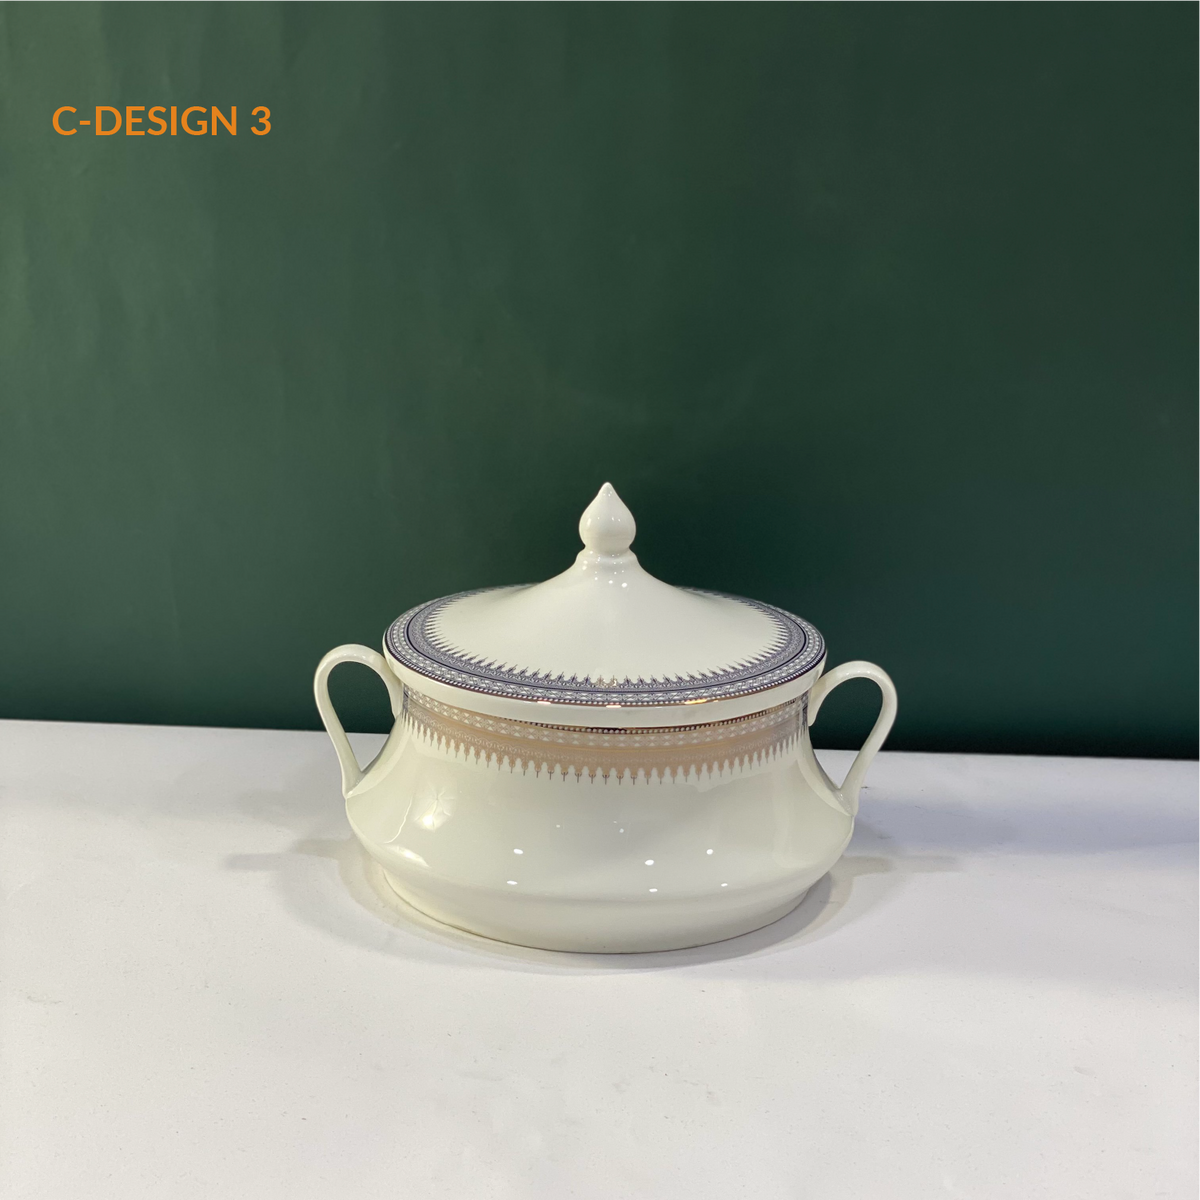 Ceramic Porcelain Serving Bowl with Lid - Design C